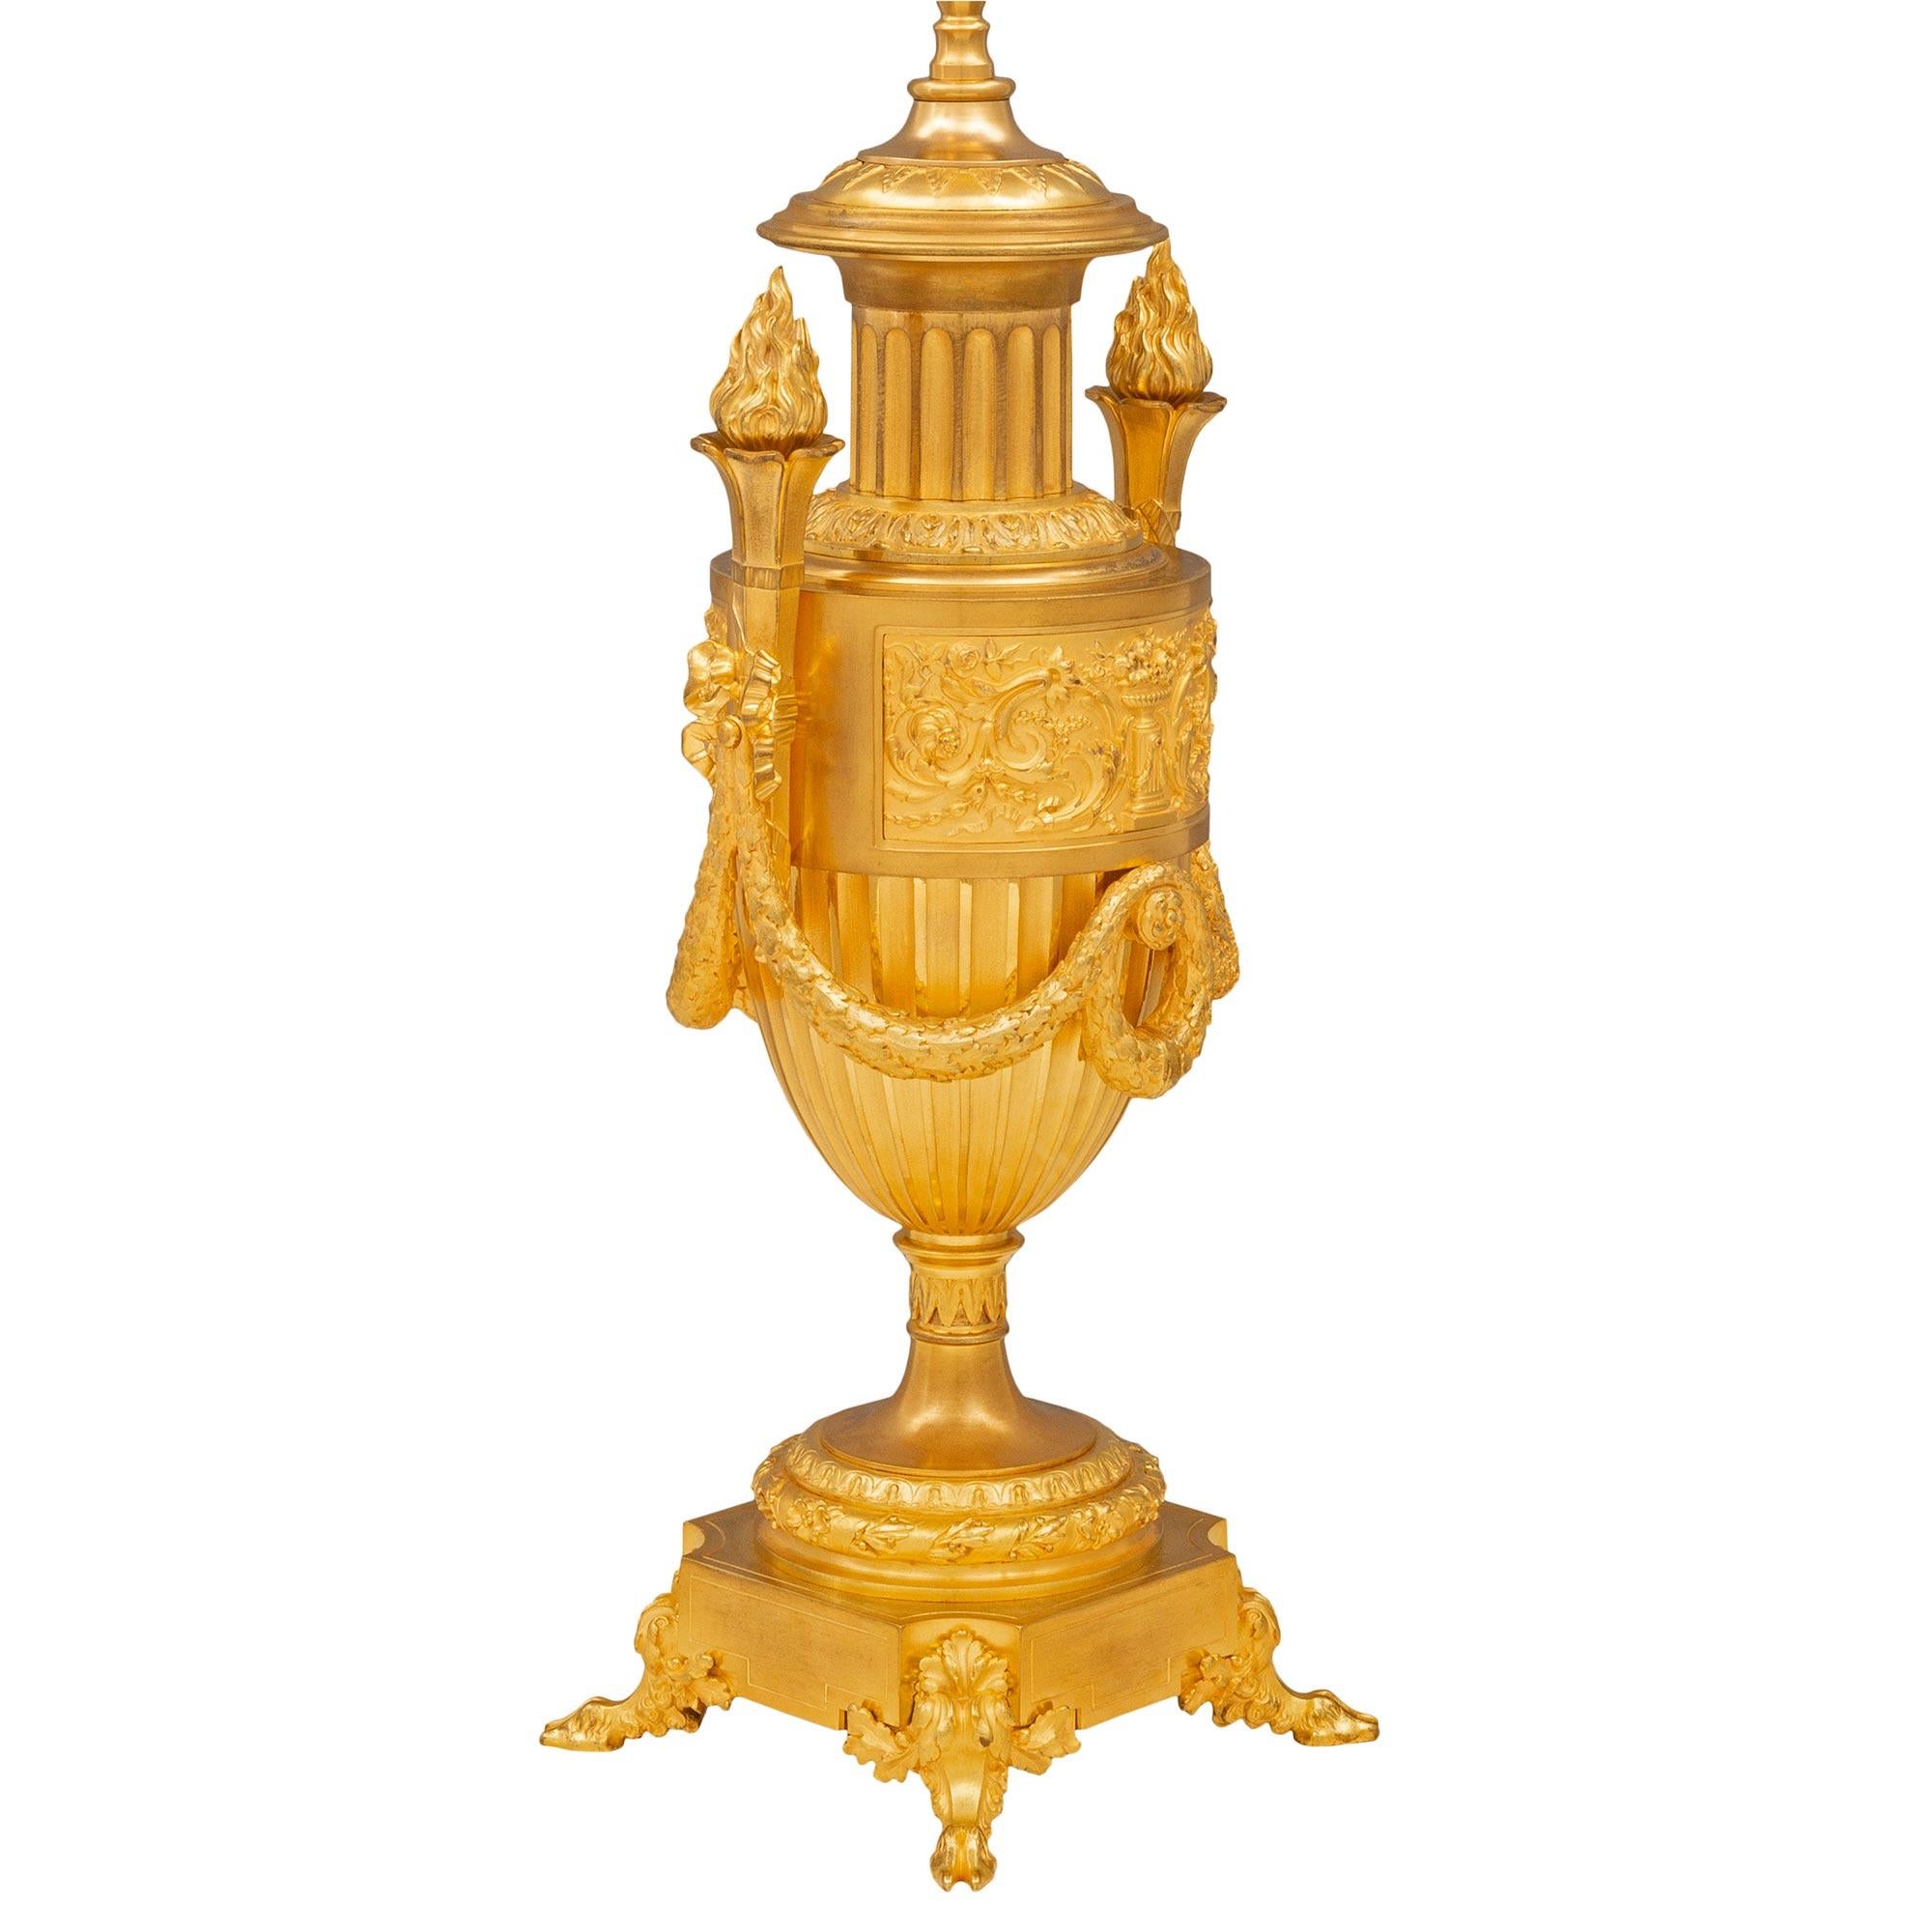 Exceptionnelle lampe française du XIXe siècle en st. Louis XVI et bronze doré. La lampe est surélevée par d'élégants pieds en forme de sabots et des supports en forme de feuilles d'acanthe sous la base carrée aux angles concaves. Le support du